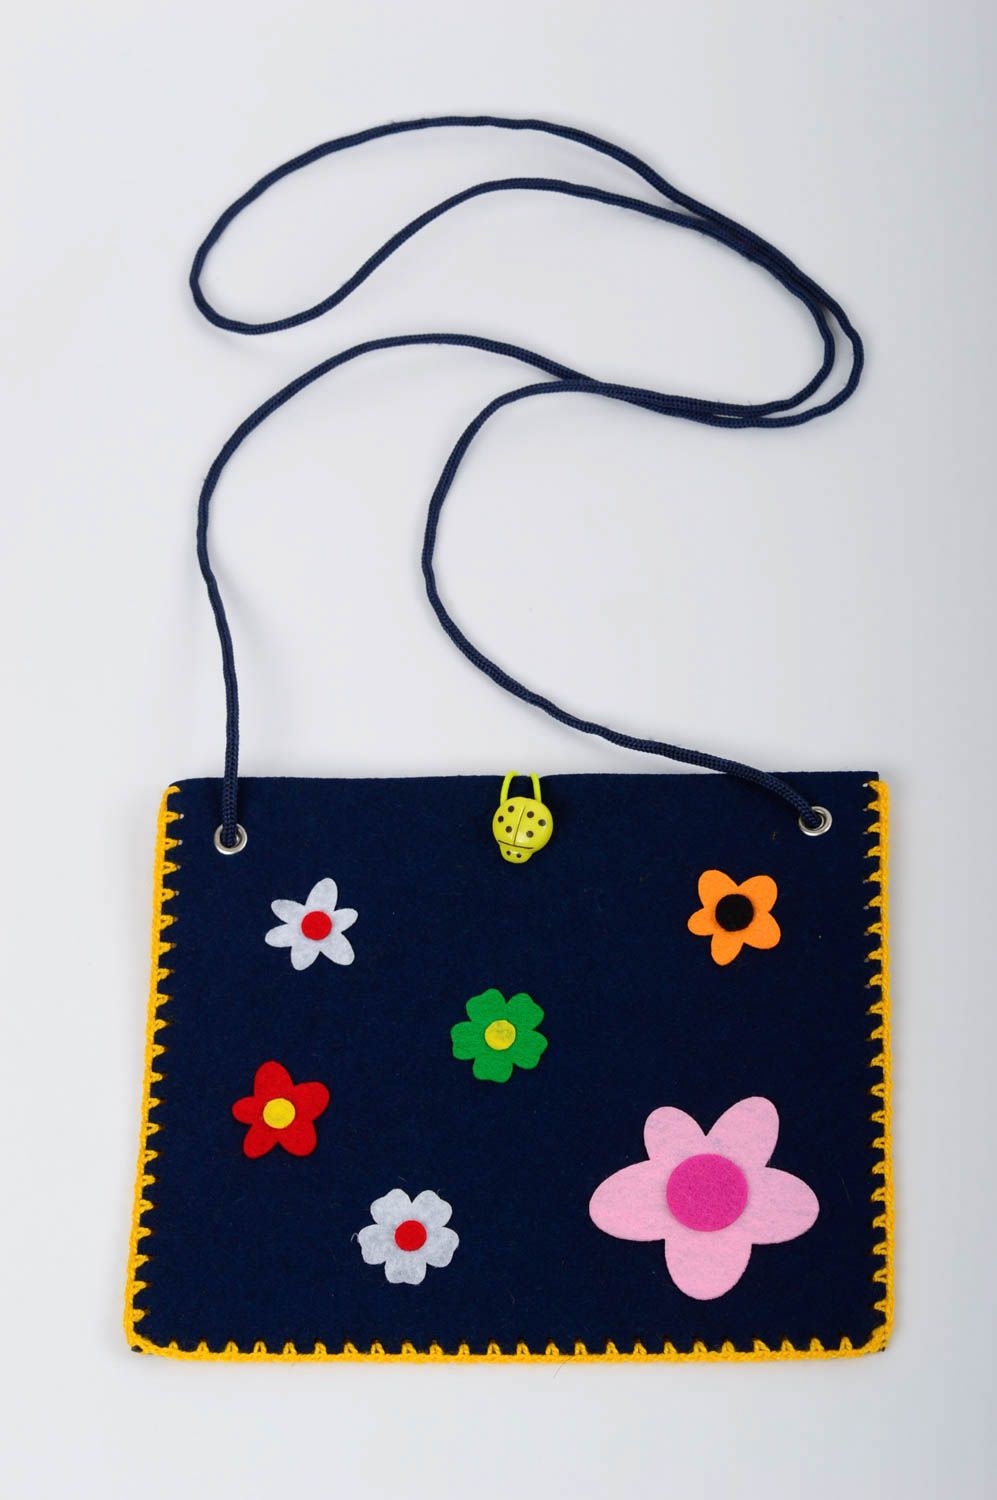 Сумка ручной работы сумка из фетра темно синяя сумка для детей с цветами фото 1